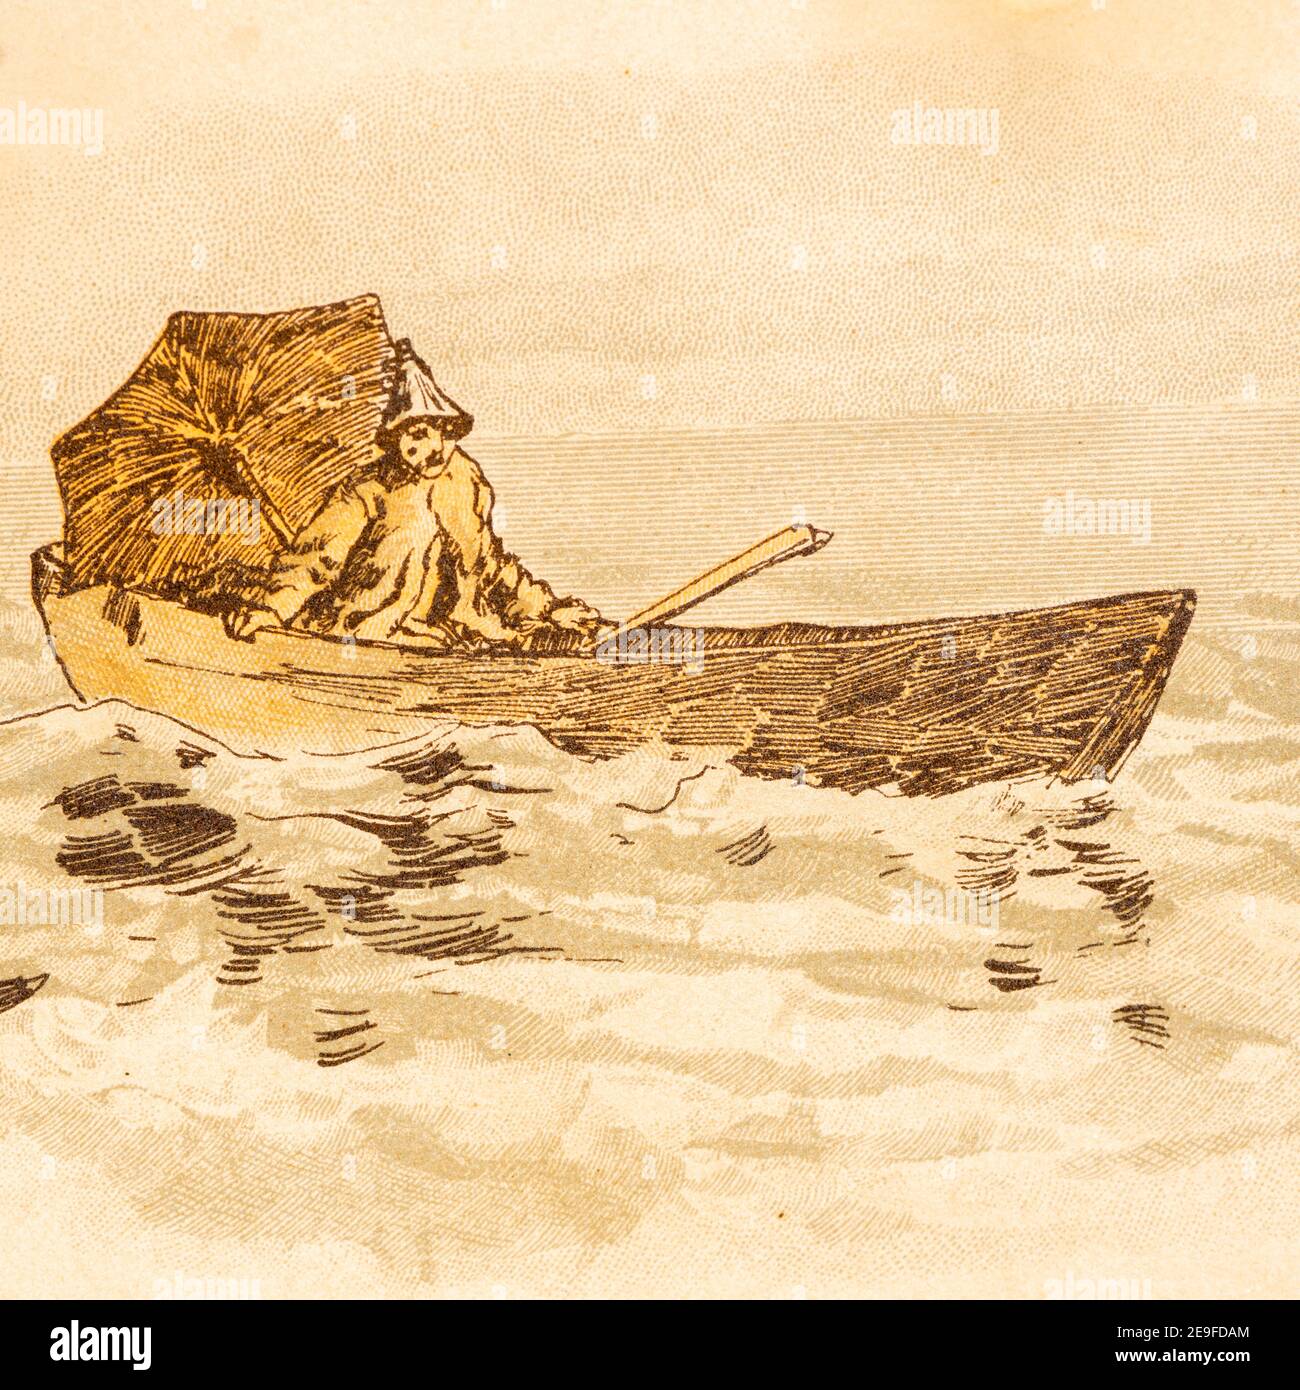 Robinson quitte son île par bateau et des vents d'est le ramenant, Robinson Crusoe, adopté par J. Lohmeyer, aquarelles par Carl Marr, Leipzig 1890 Banque D'Images